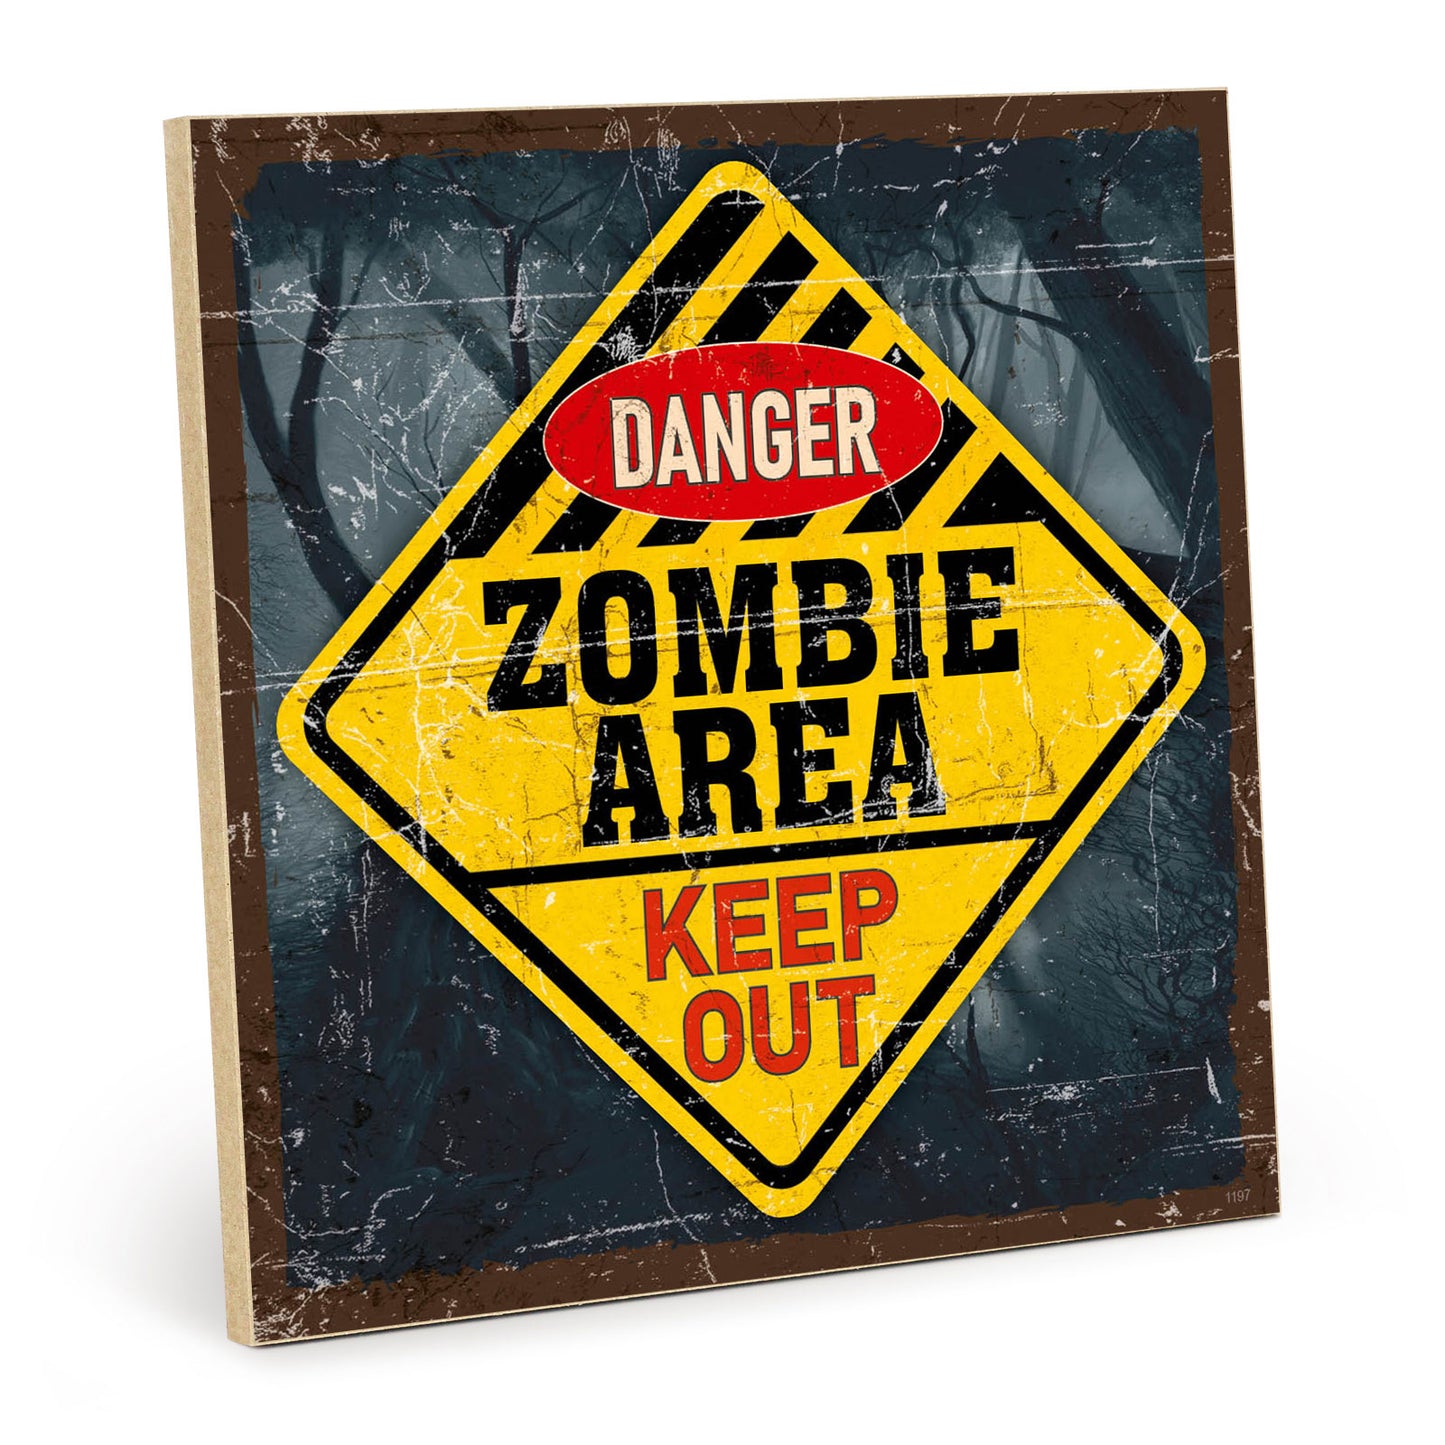 Holzschild mit Spruch - Tür - danger zombie area – HS-QN-01197